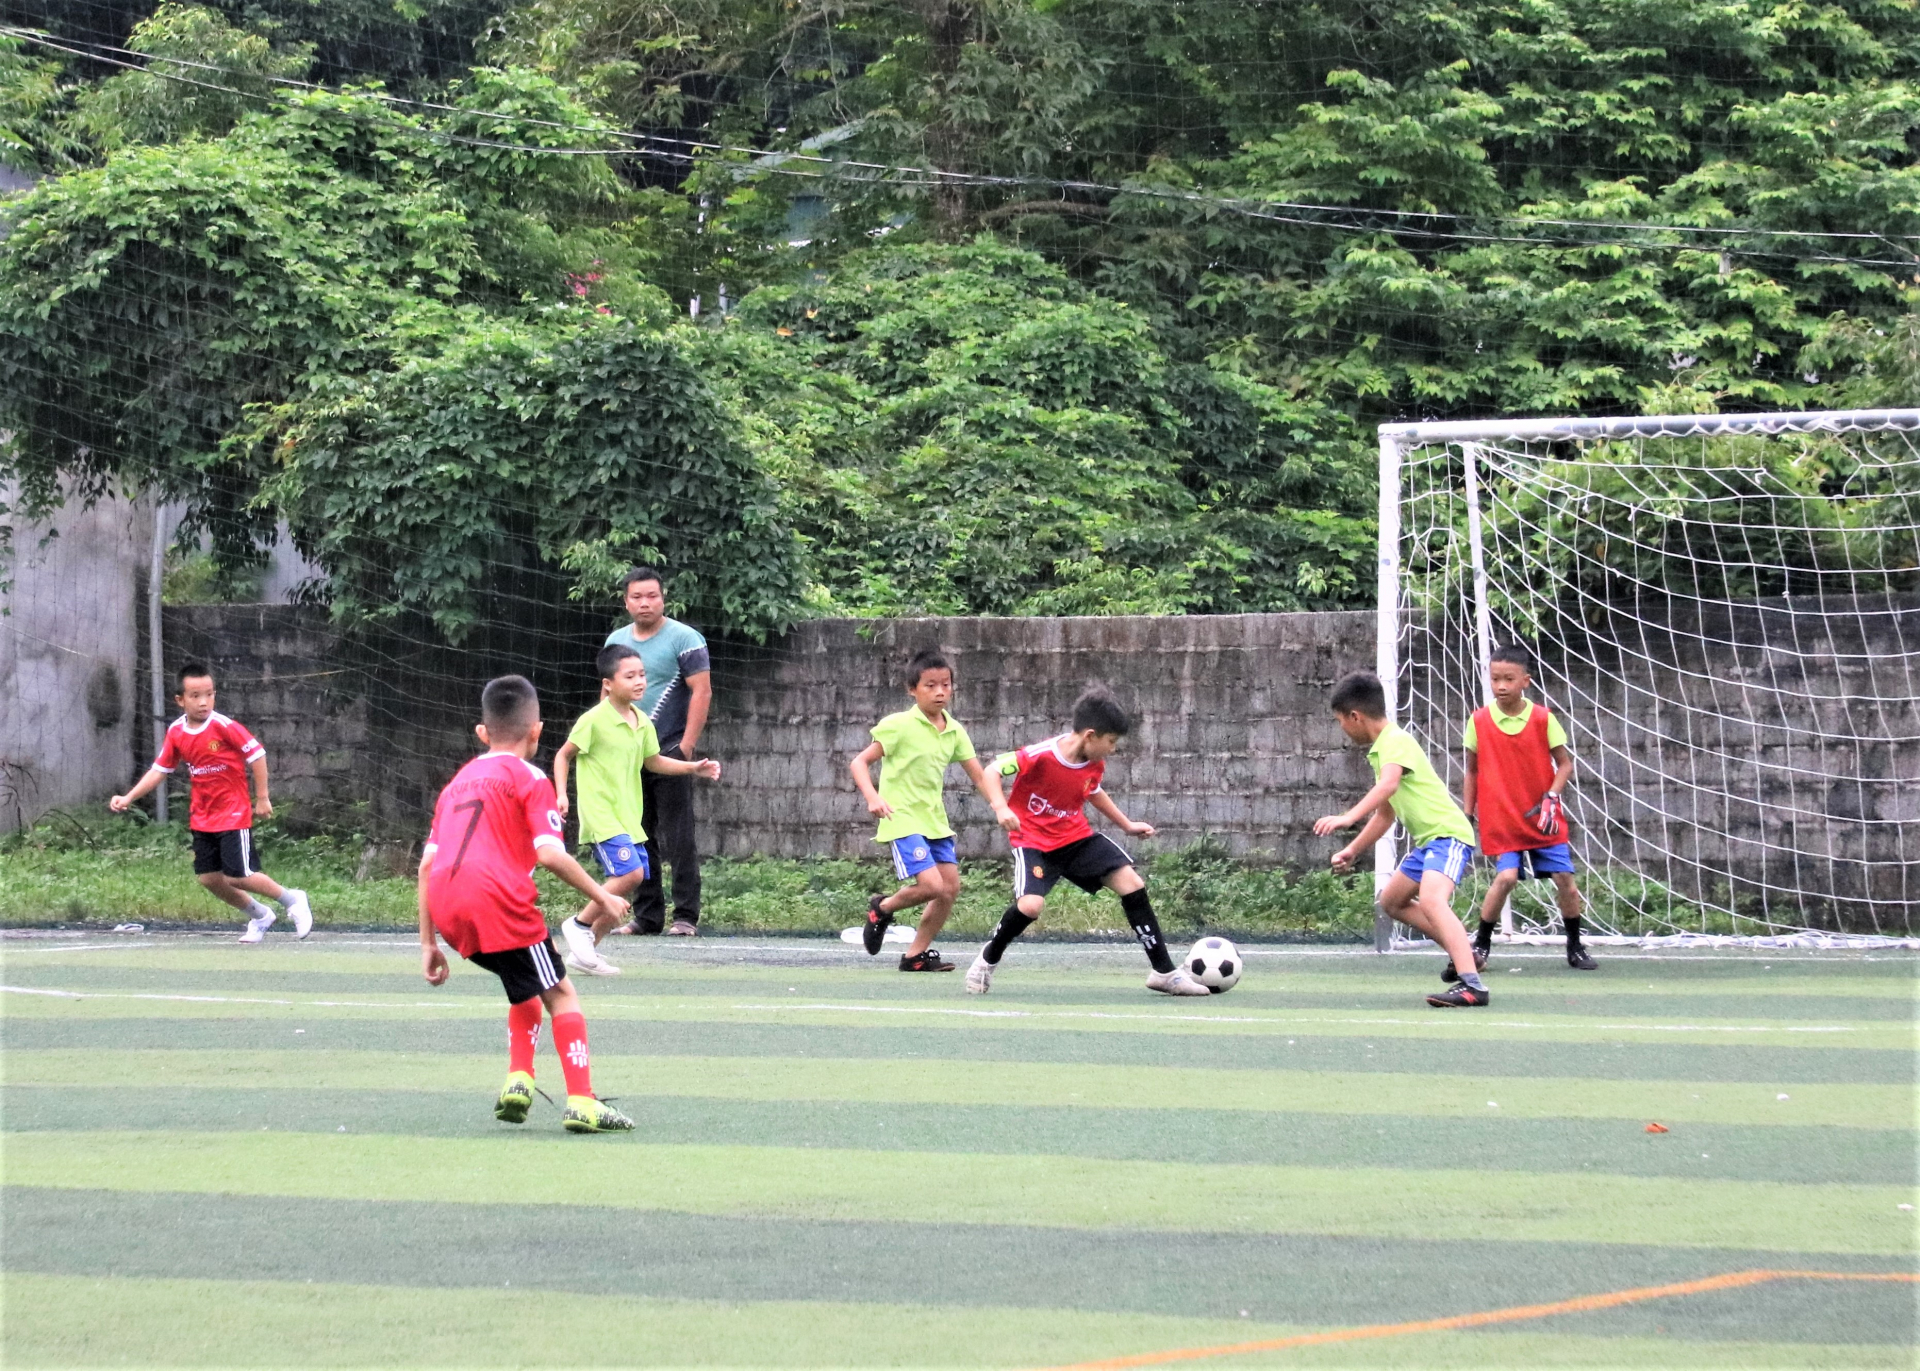 Đội Bóng đá trường Tiểu học Phương Độ thi đấu với Đội Bóng đá trường Tiểu học Quang Trung